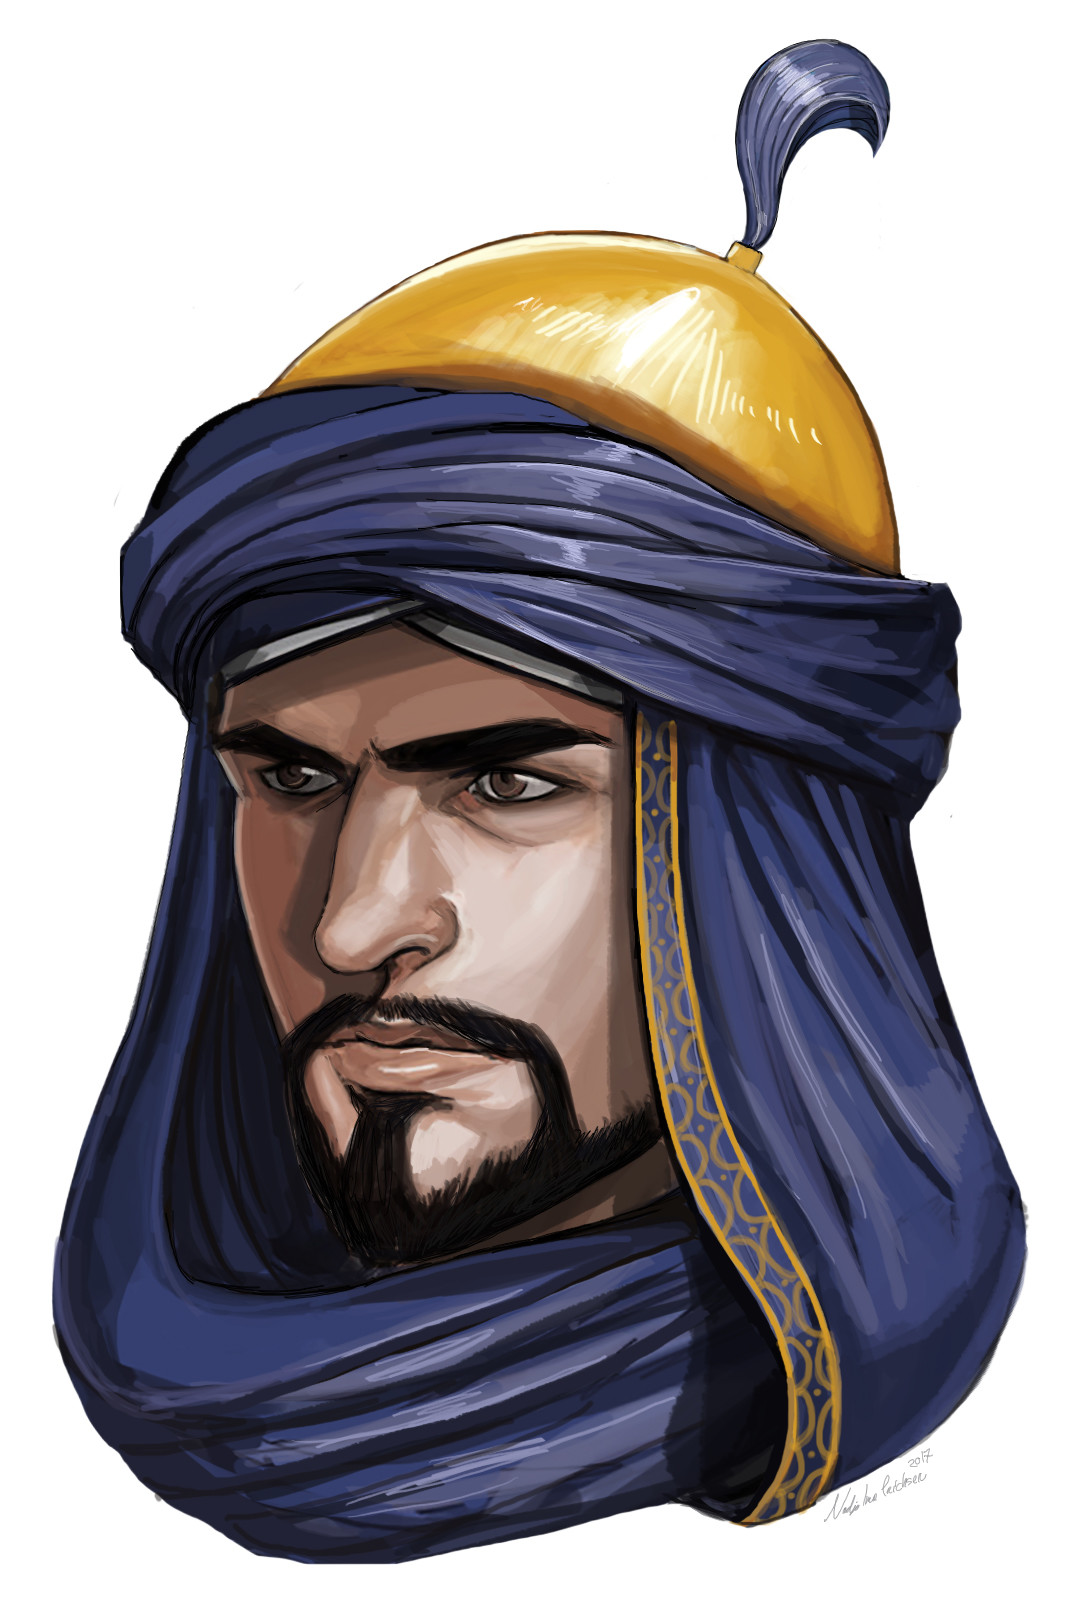 Arabian guy